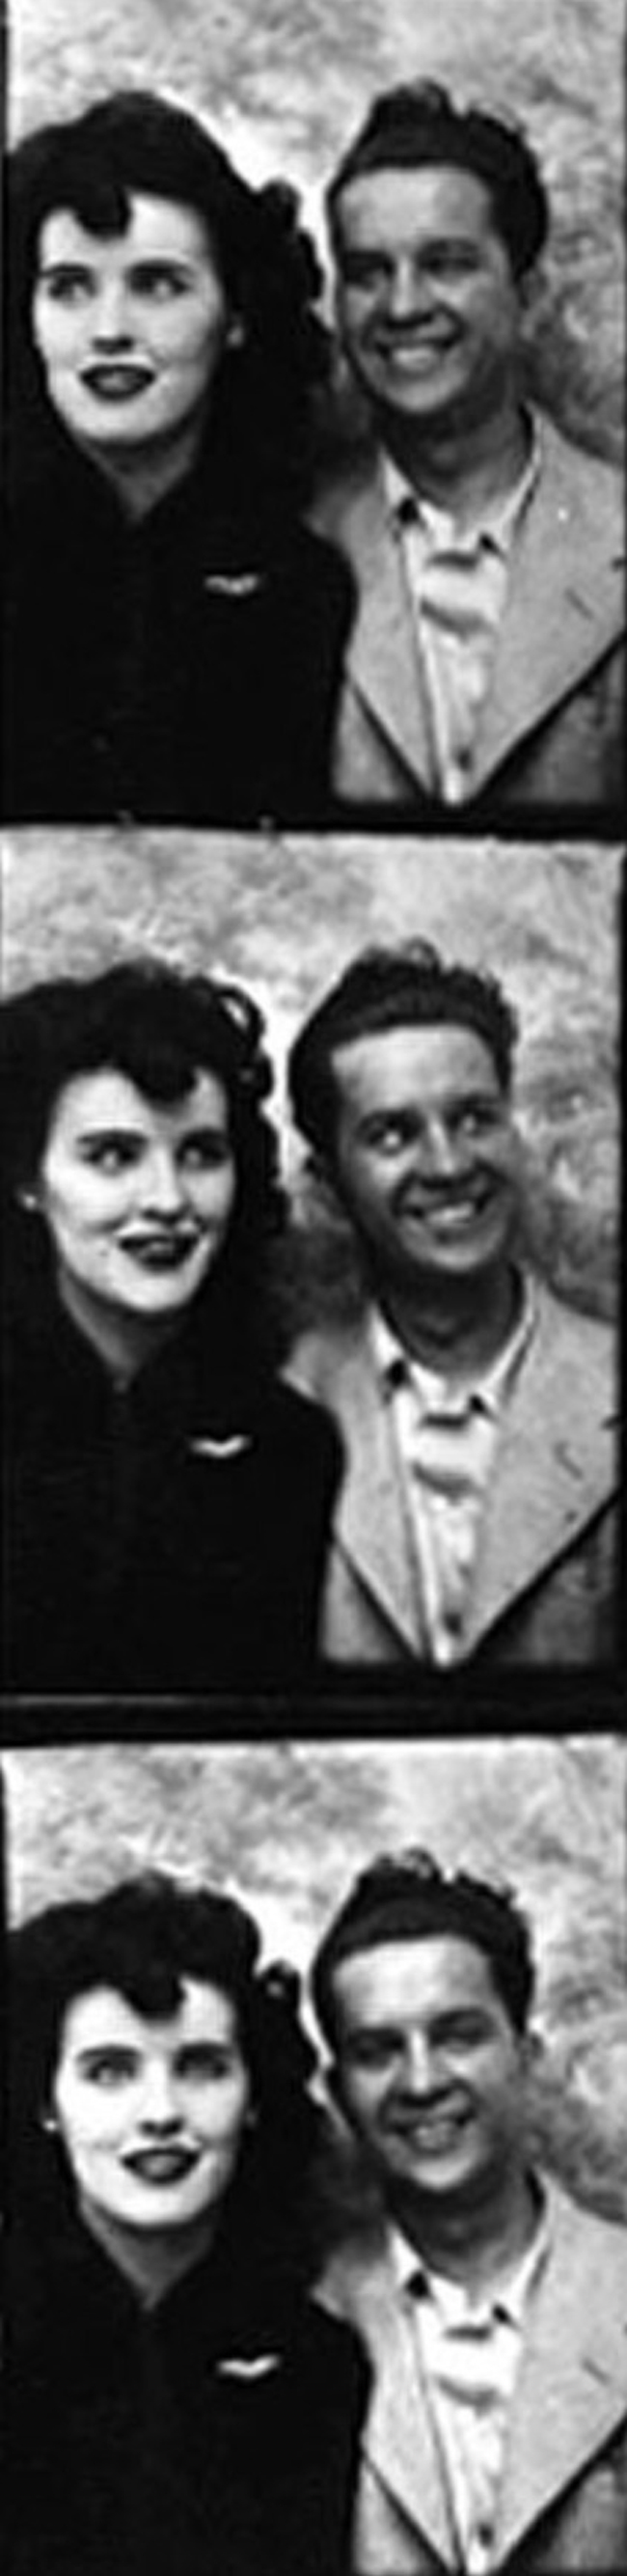 Elizabeth-Short-with-Lieutenant-Joseph-Gordon-Fickling-in-LA-late-1946